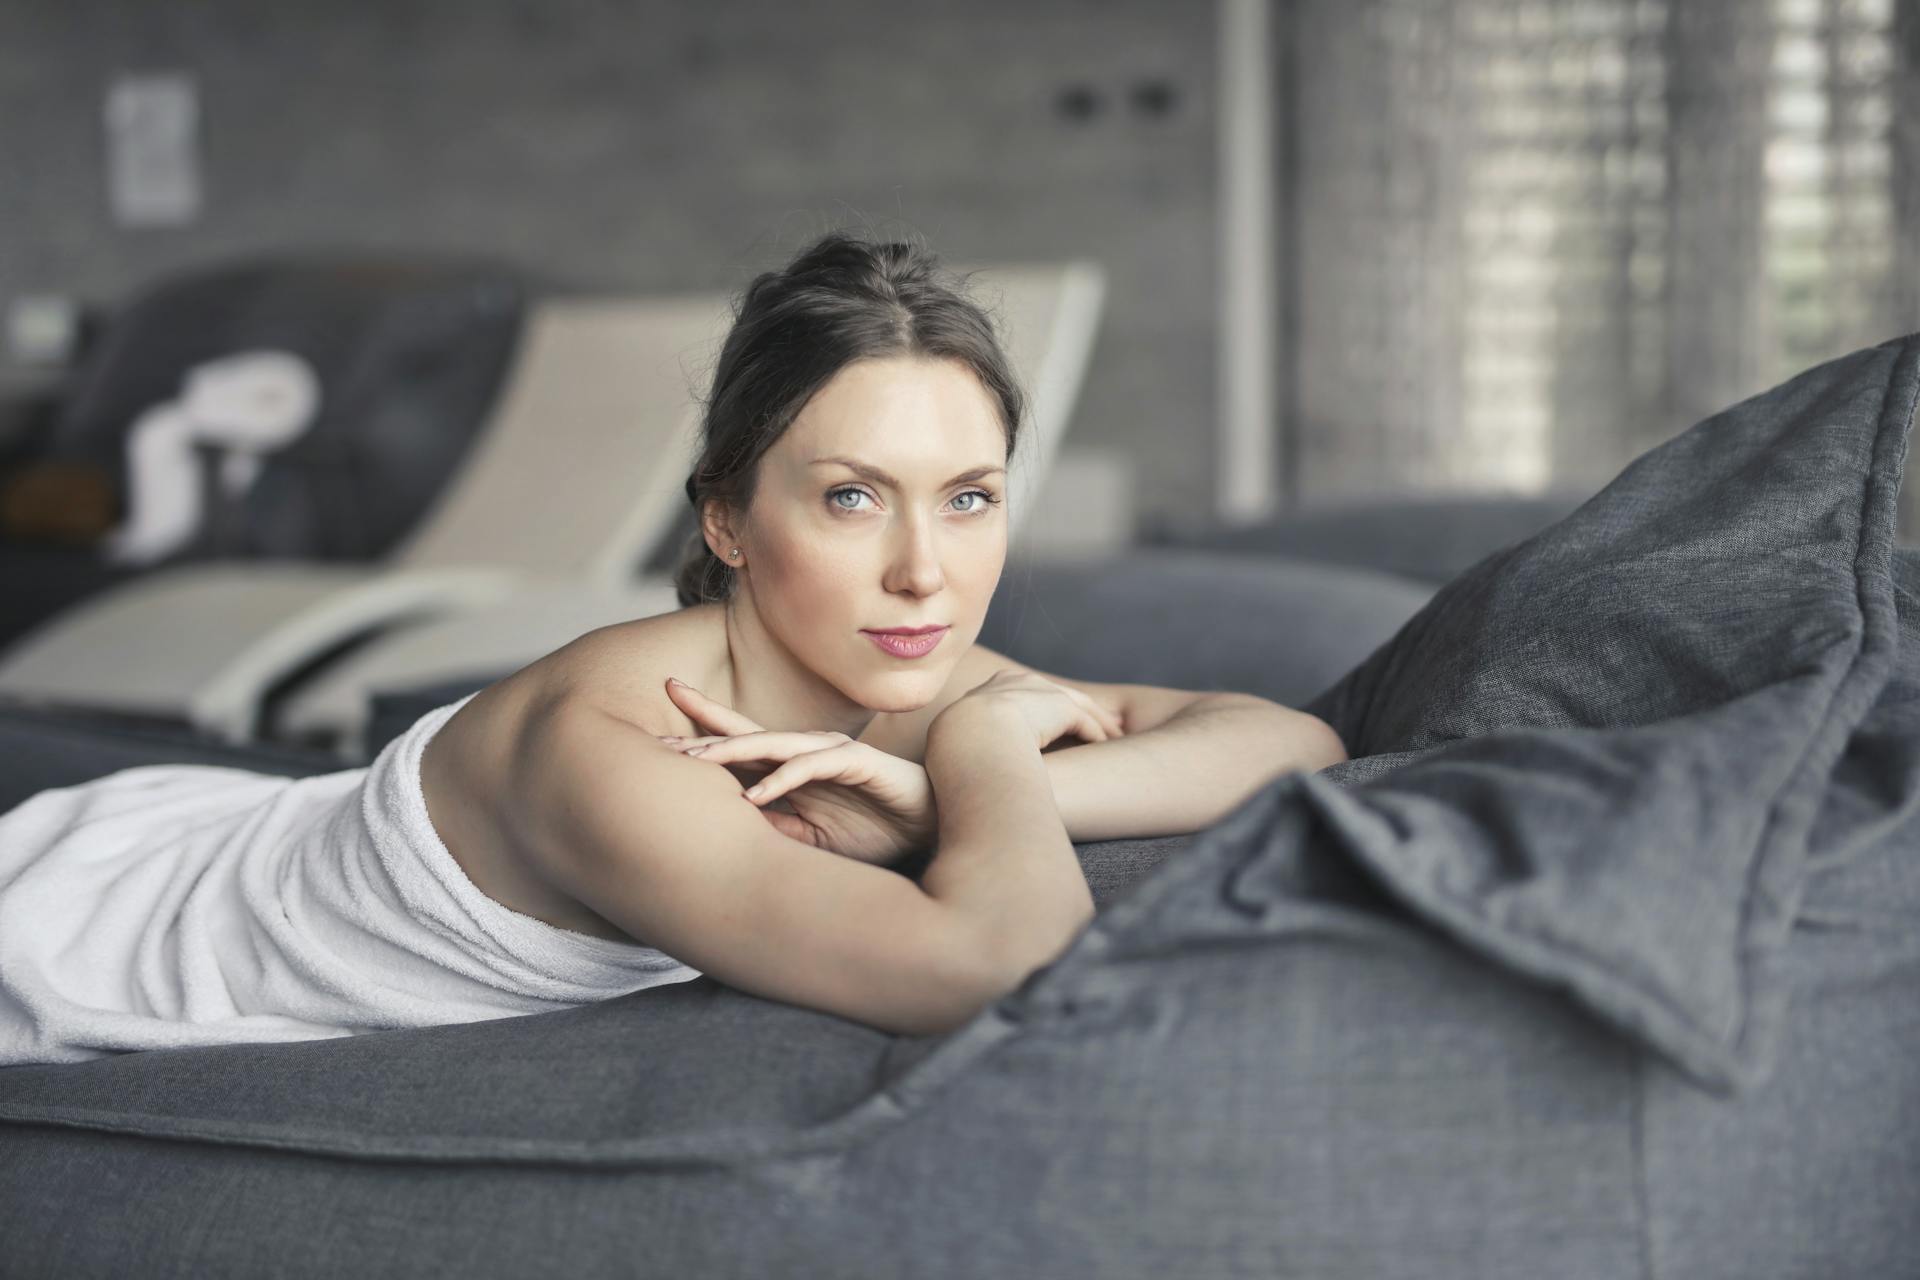 Une femme couverte d'une serviette allongée sur un lit | Source : Pexels